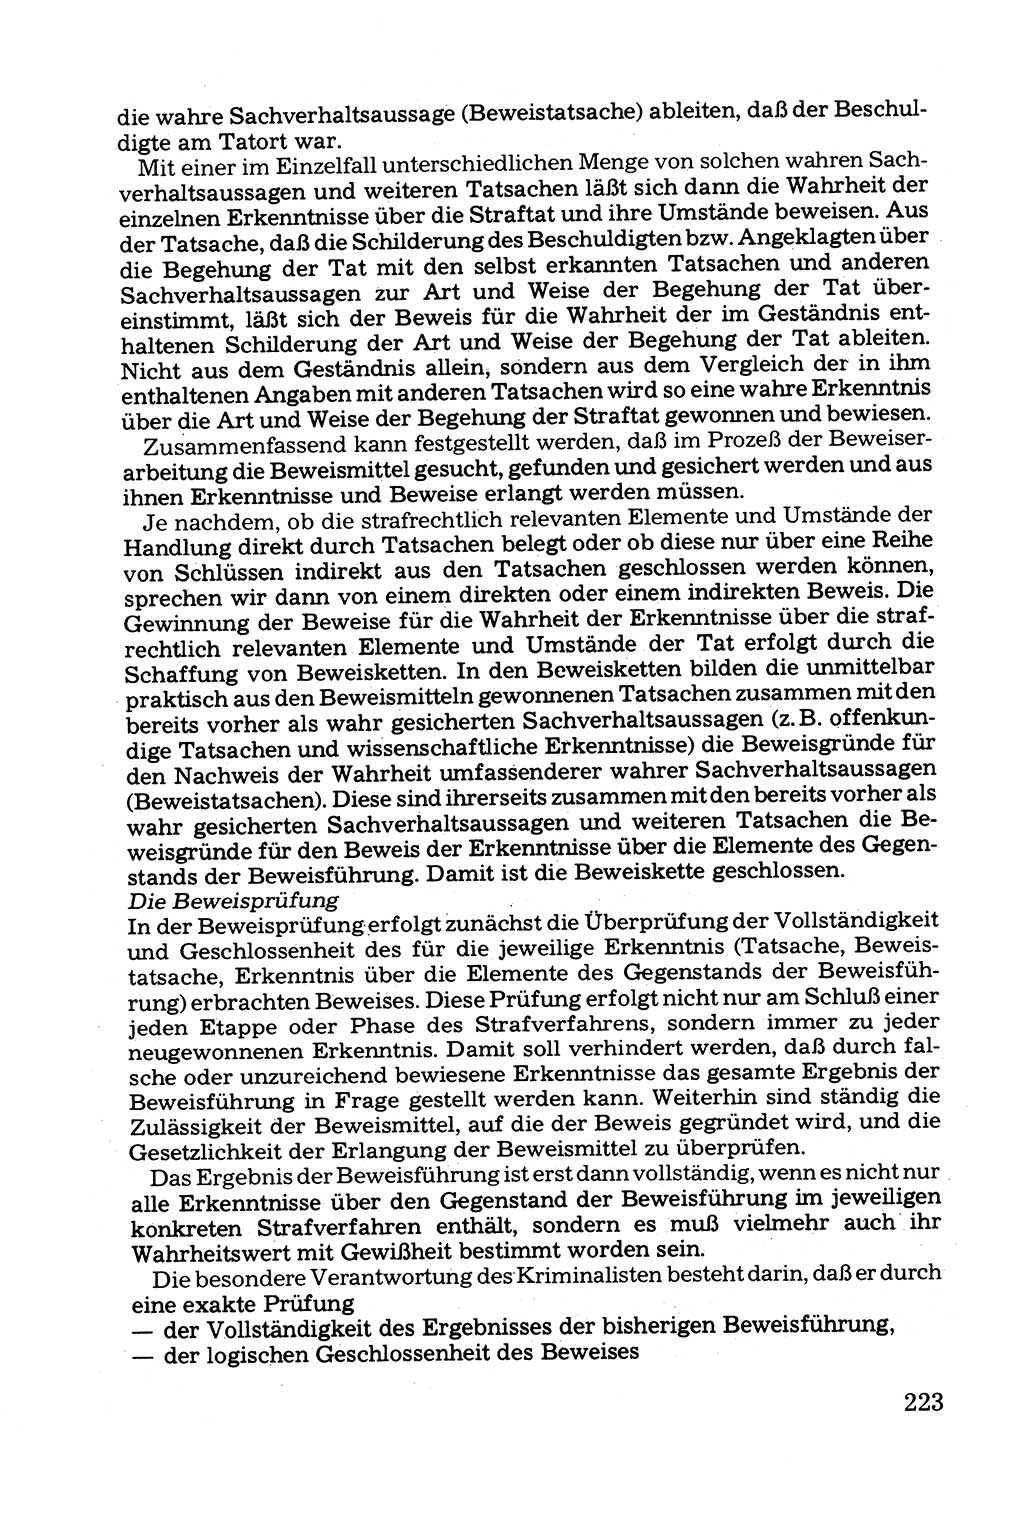 Grundfragen der Beweisführung im Ermittlungsverfahren [Deutsche Demokratische Republik (DDR)] 1980, Seite 223 (Bws.-Fhrg. EV DDR 1980, S. 223)